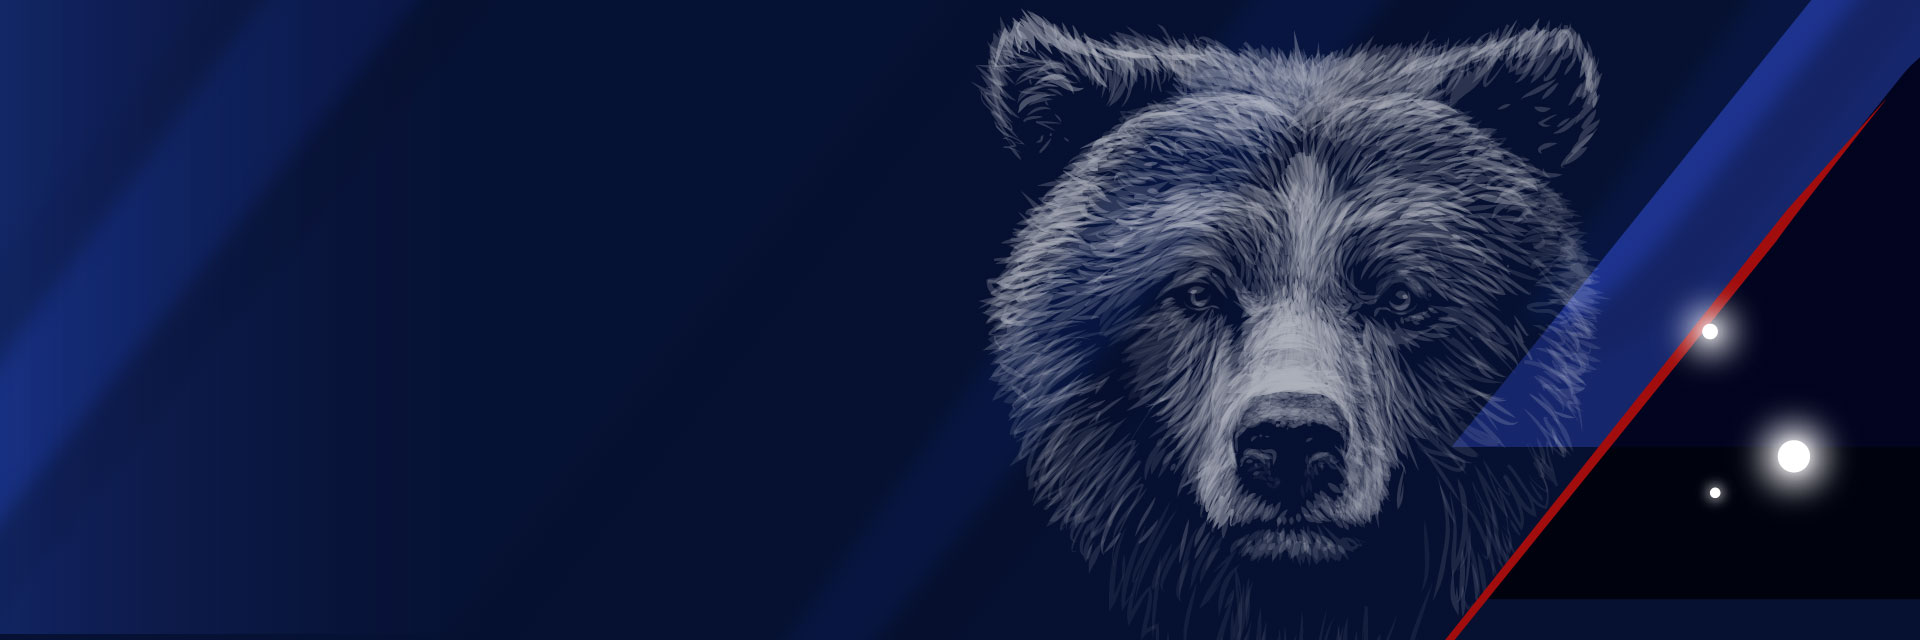 BigBear.ai bear graphic